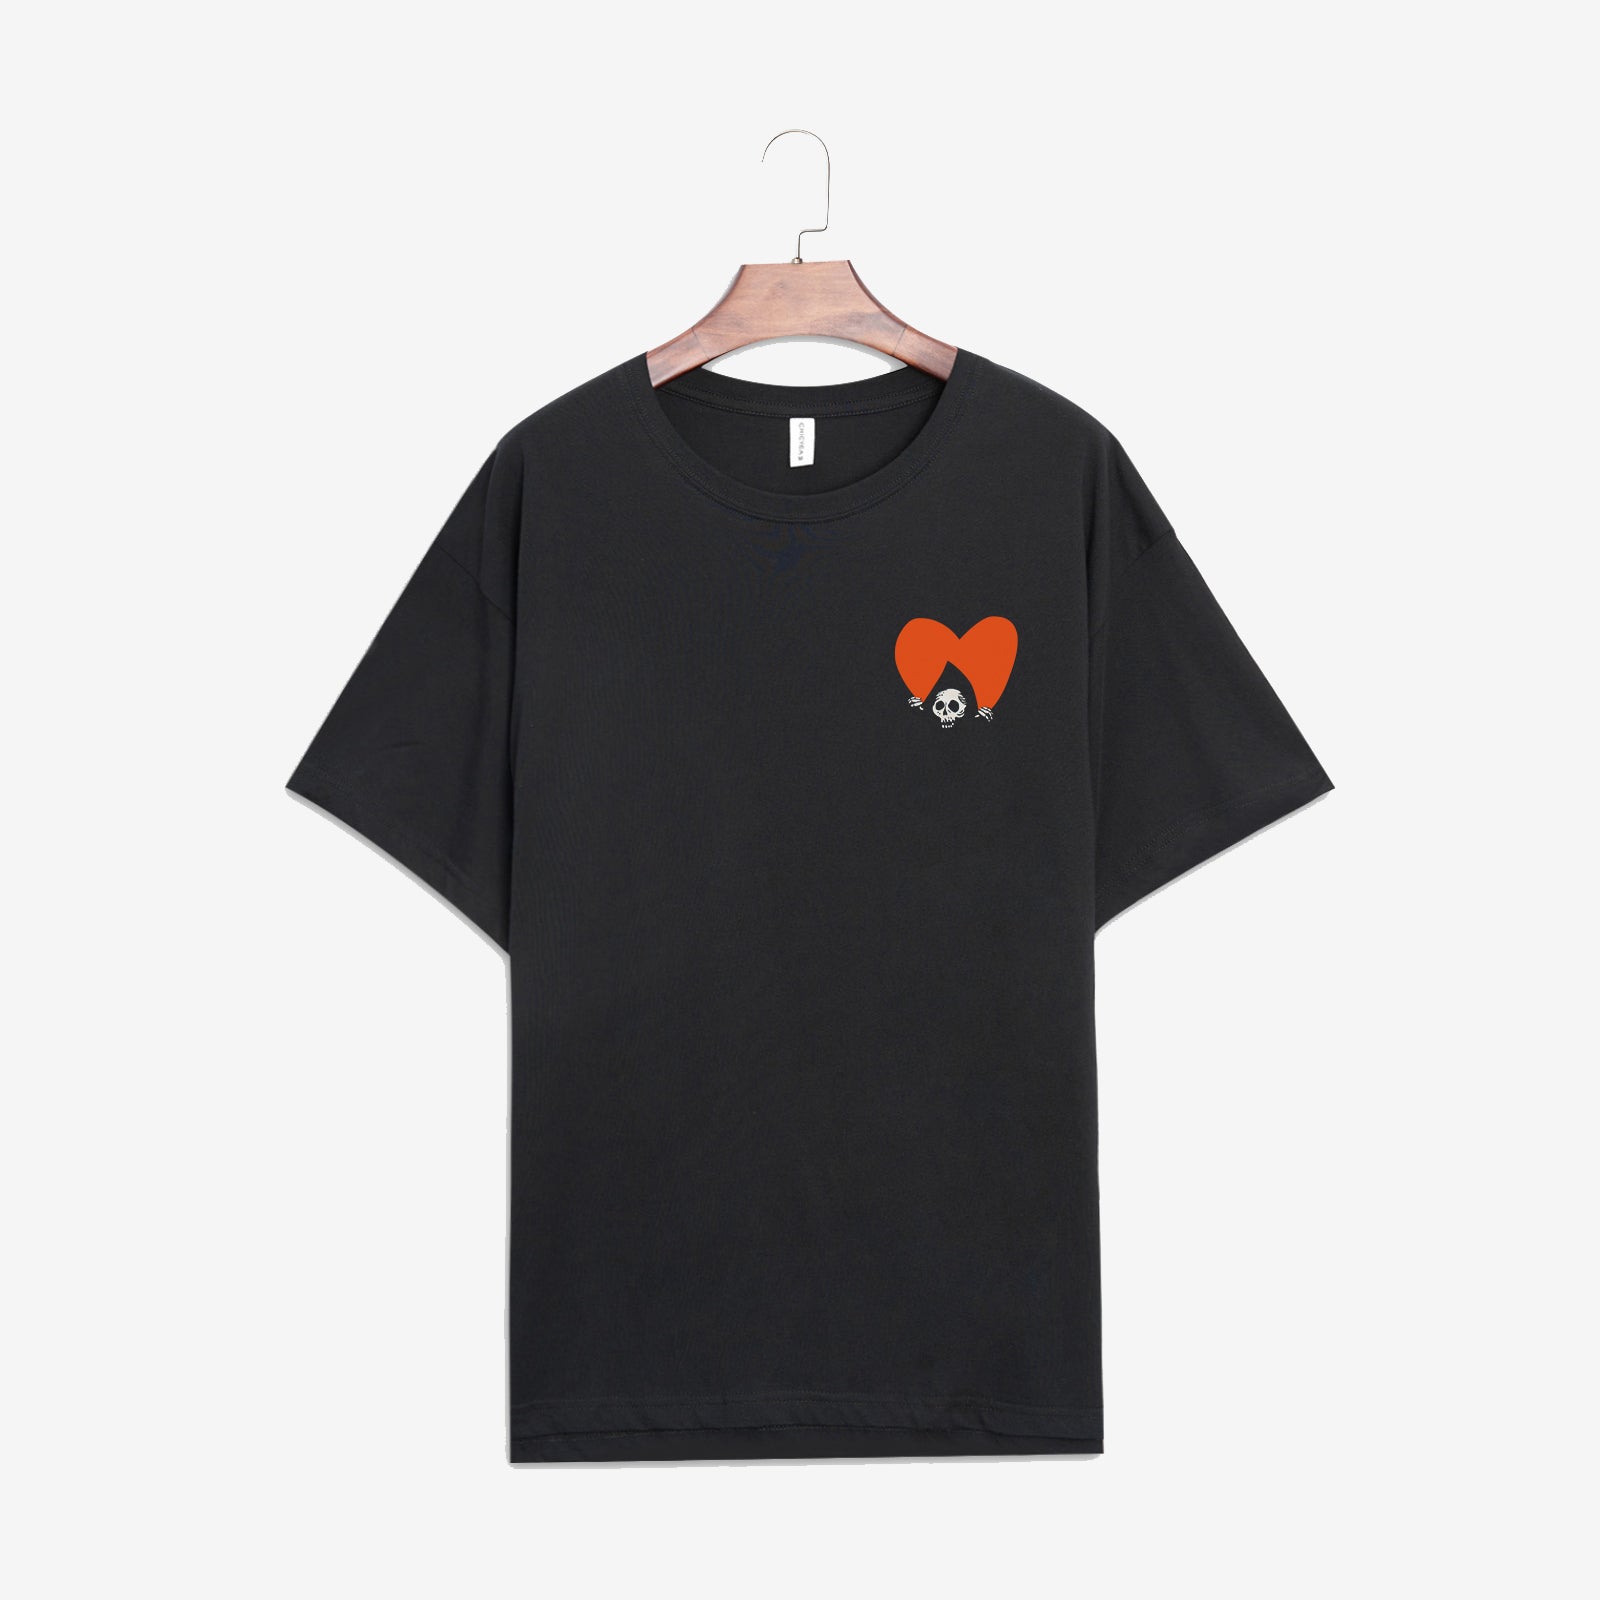 Minnieskull Classic Black Heart Print Women'S T-Shirt